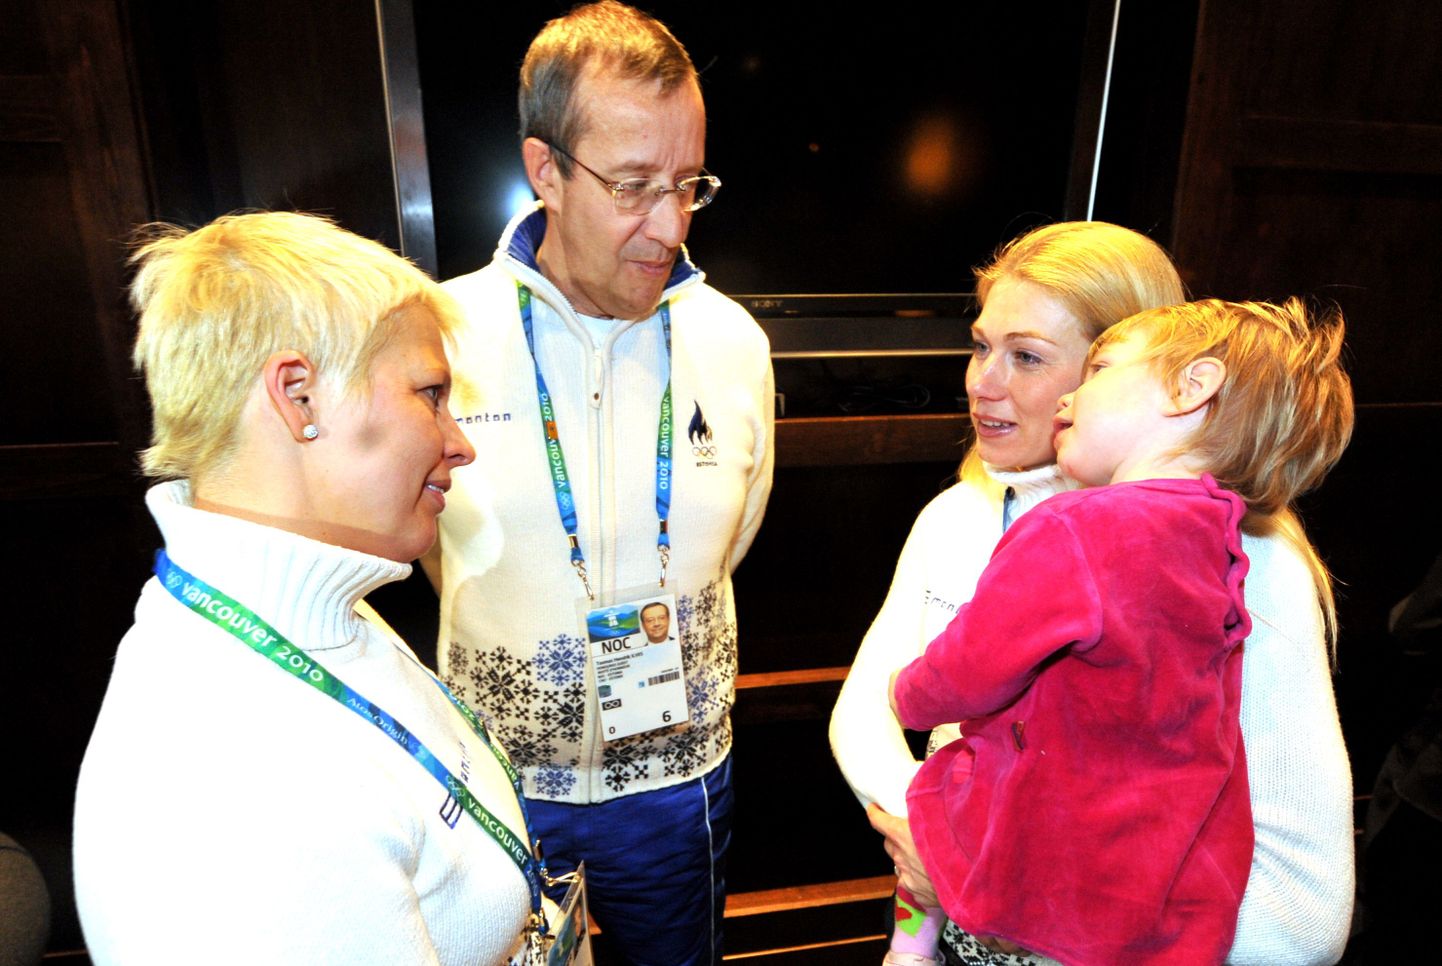 President Toomas Hendrik Ilves ja Evelin Ilves hõbemedali võitjat Kristina Šmigun-Vähit õnnitlemas. Hõbedanaise süles on tütar Victoria Kris.